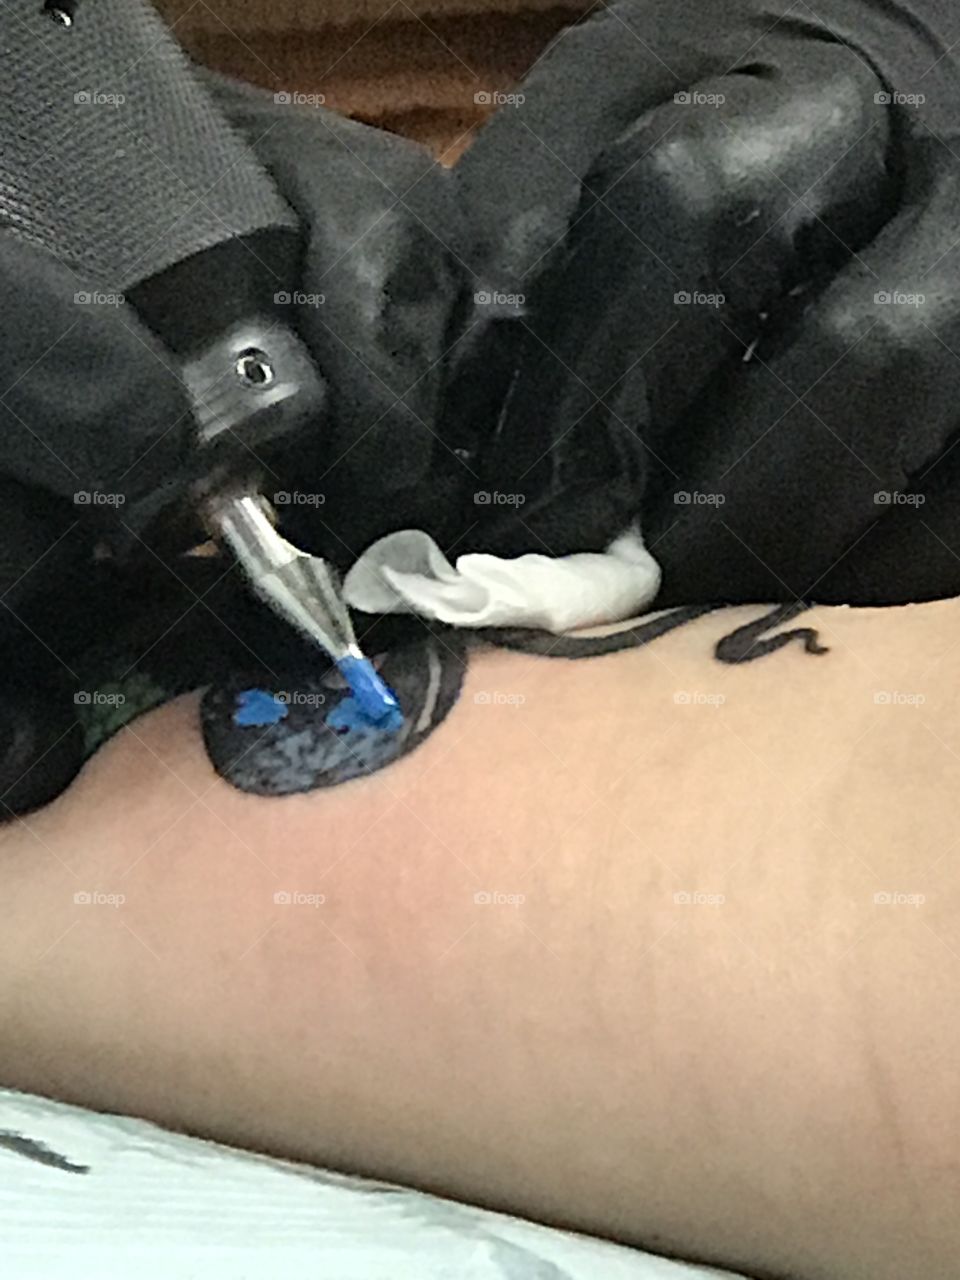 Blue tattoo ink